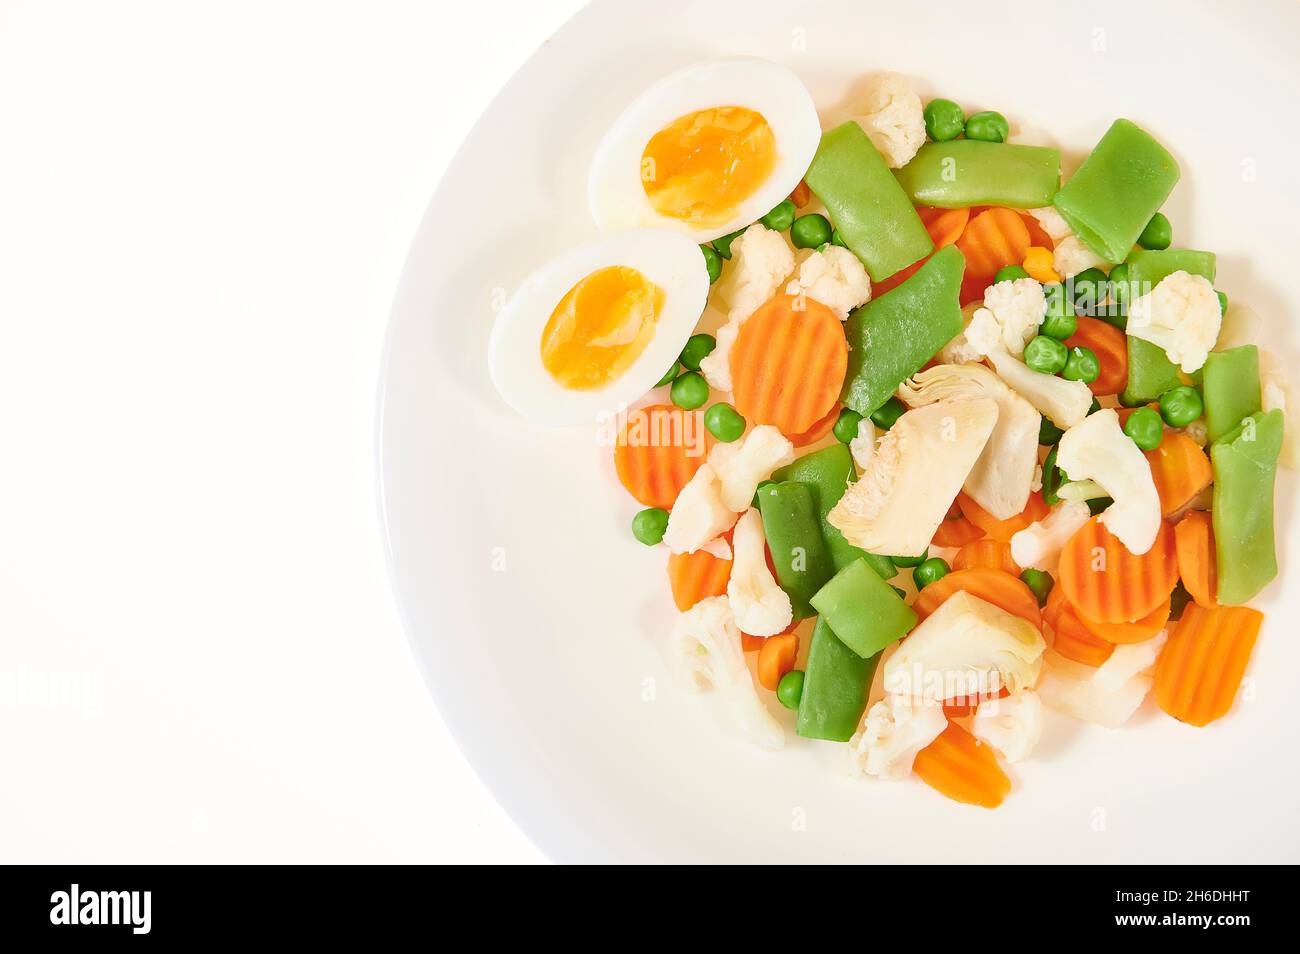 Cuisine espagnole mélange de légumes et d'œufs durs (Menestra de verduras) Banque D'Images